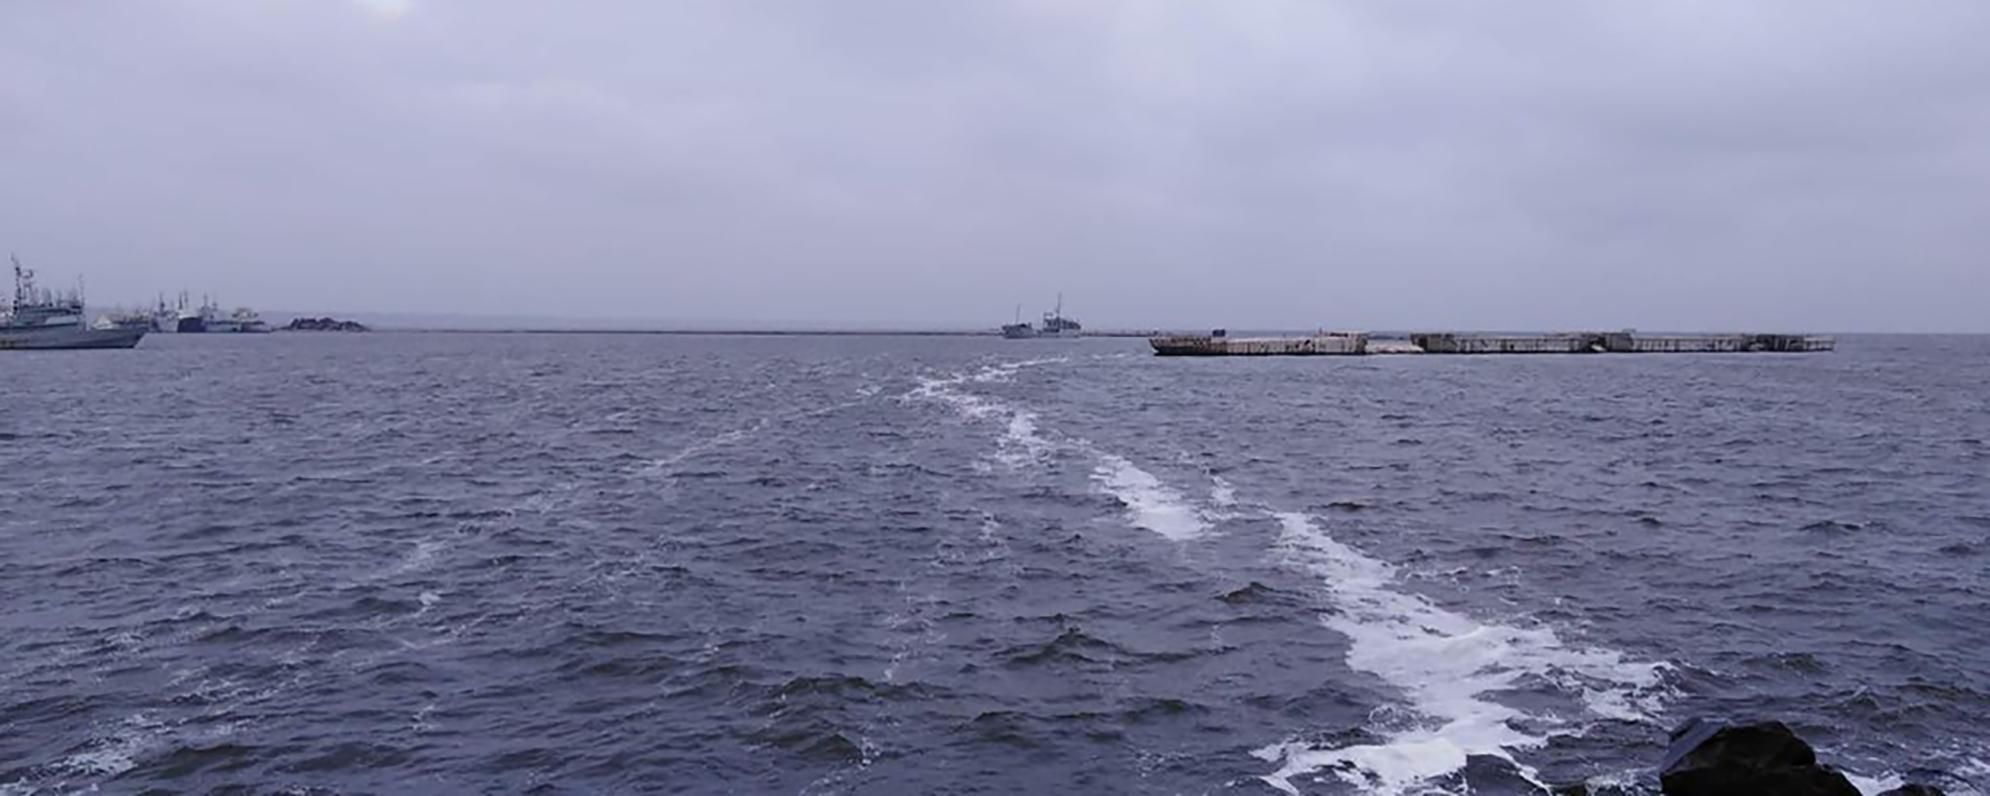 Российские корабли понесли потери в Черном море: военные сбили беспилотник Орлан-10